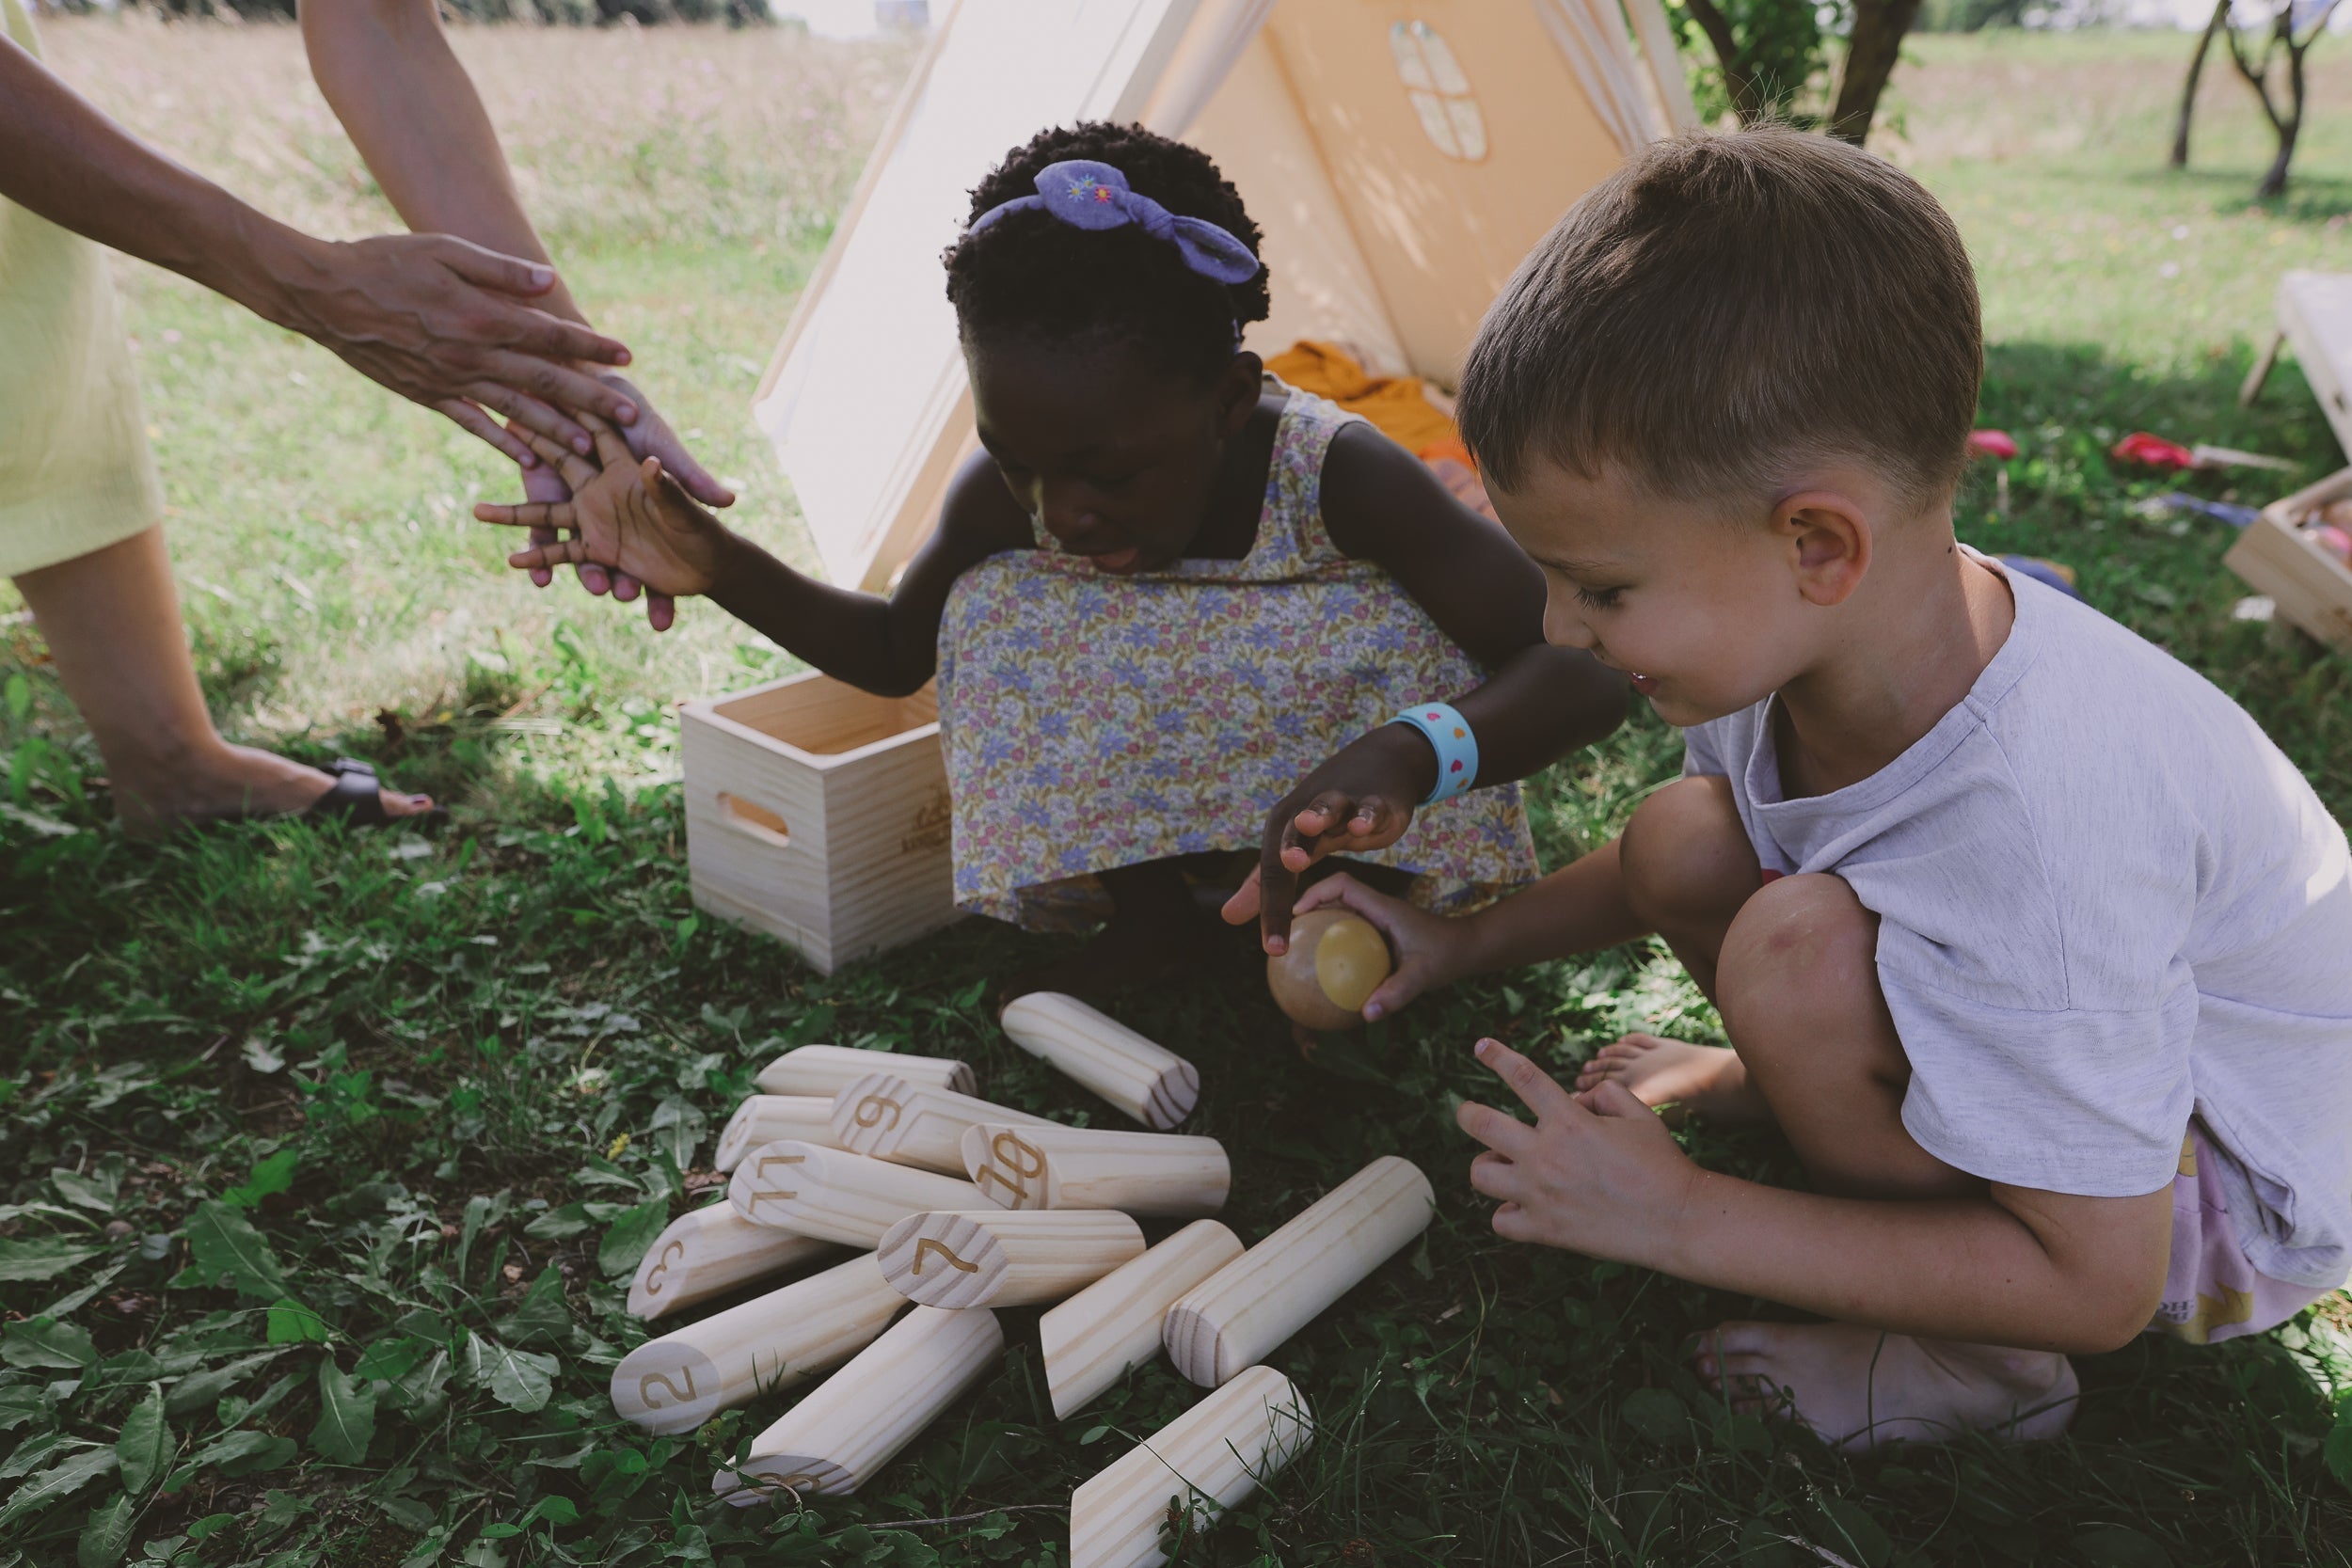 Kinderfeets Kinderfeets Skittle Sticks: Ein Spiel der Liebe und Geschicklichkeit im eigenen Garten! 💕🎳🌿